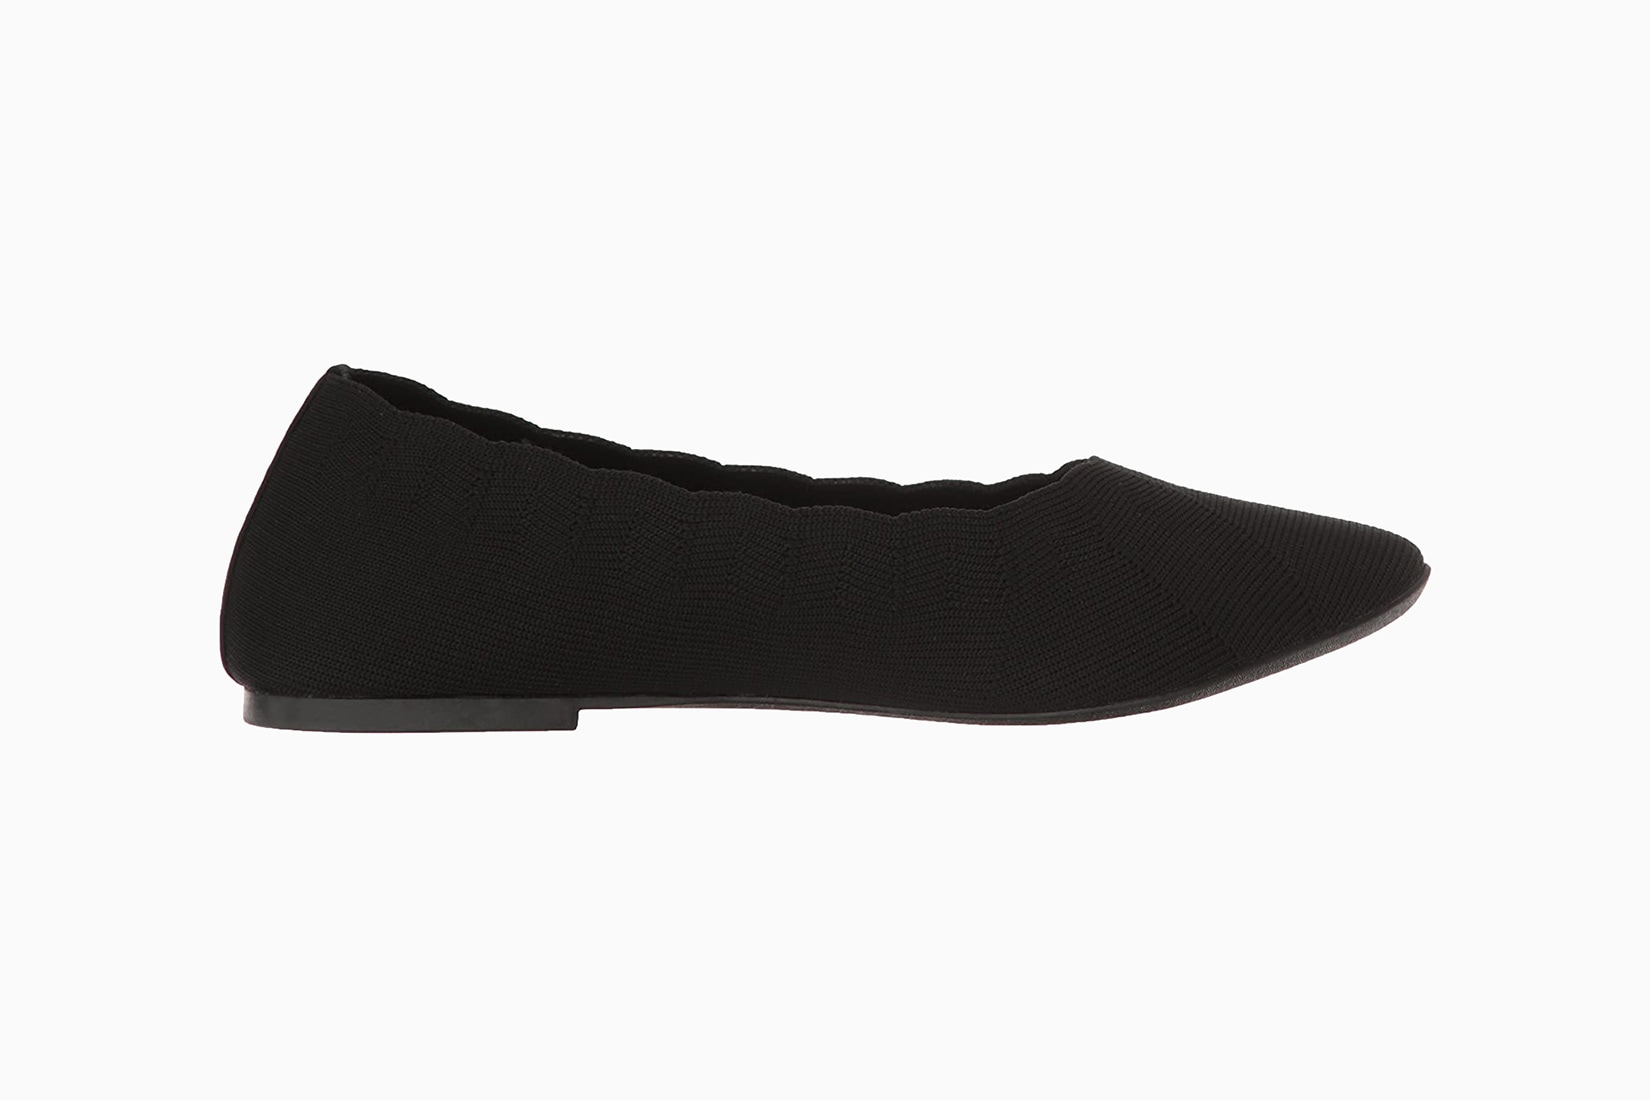 Les chaussures plates les plus confortables avec soutien de la voûte plantaire - Luxe Digital